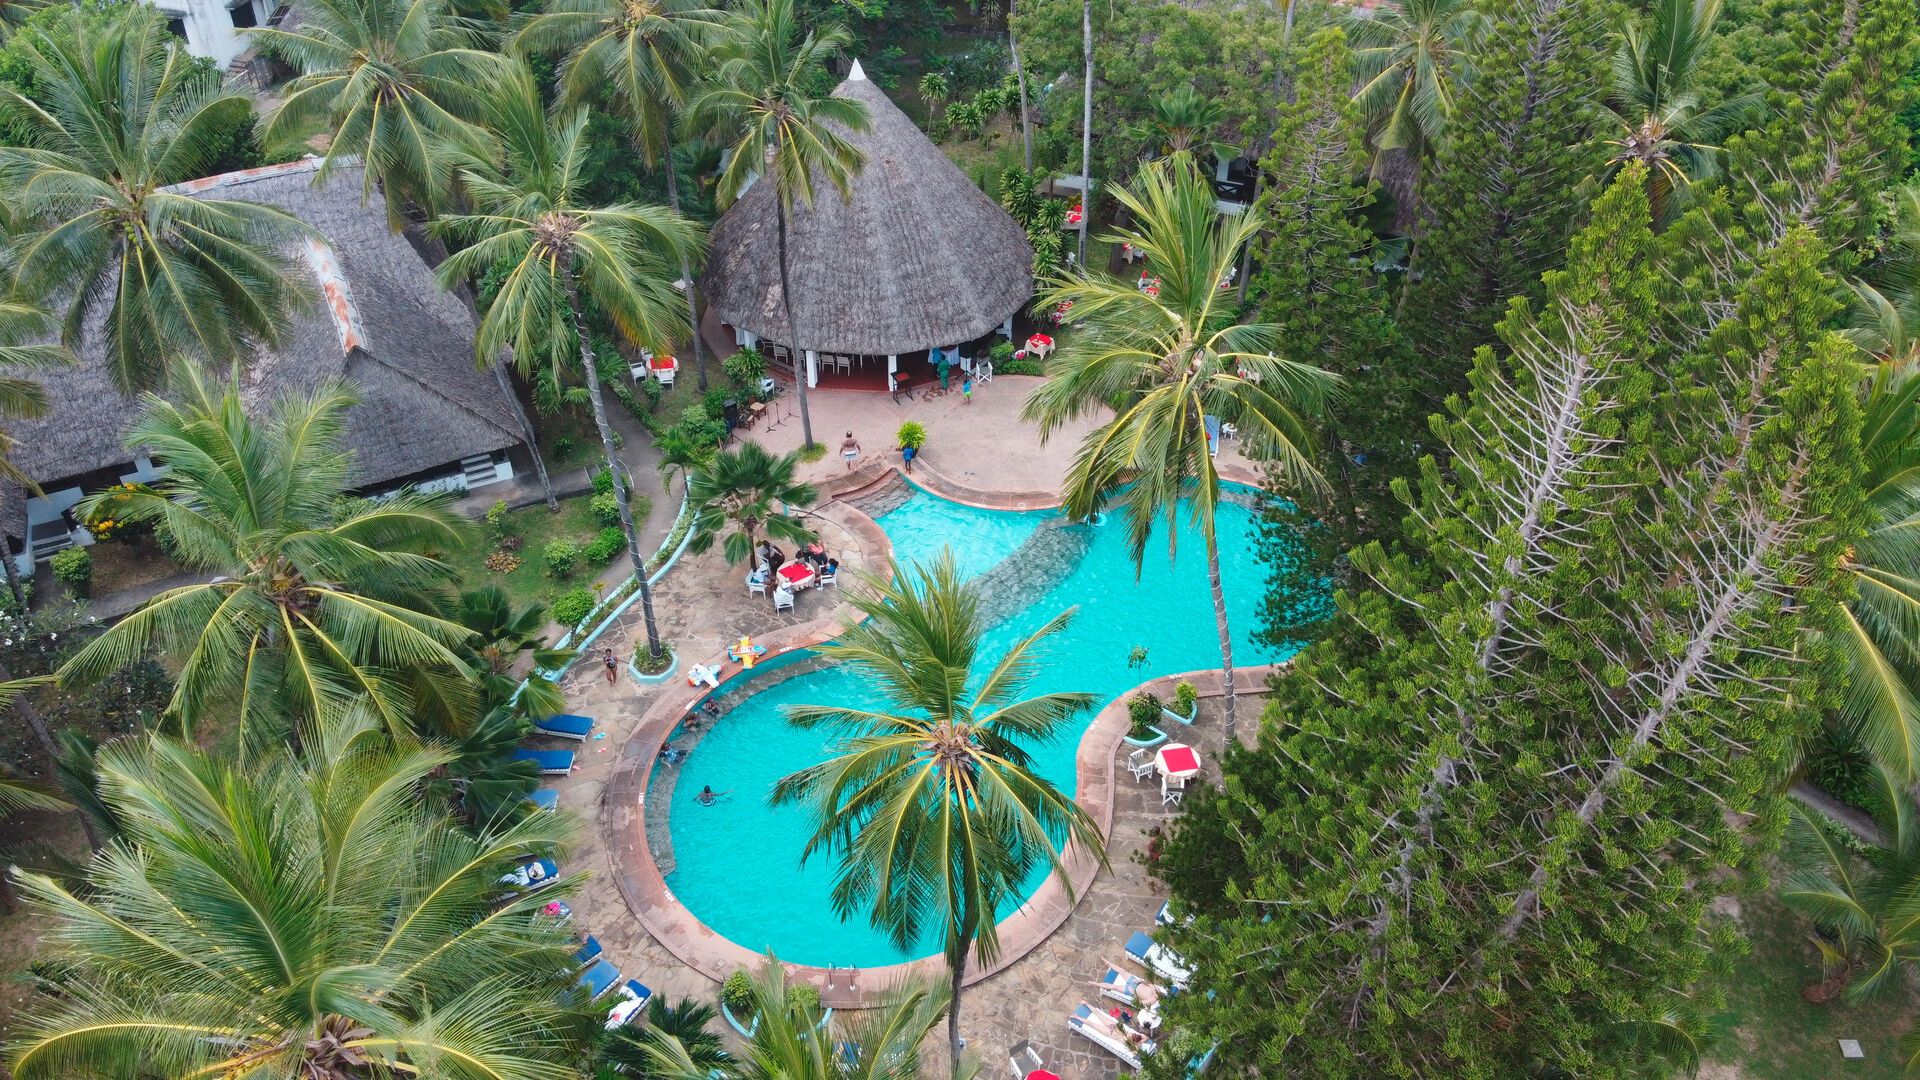 Kenya - Hotel Kilifi Bay Beach Resort 4*